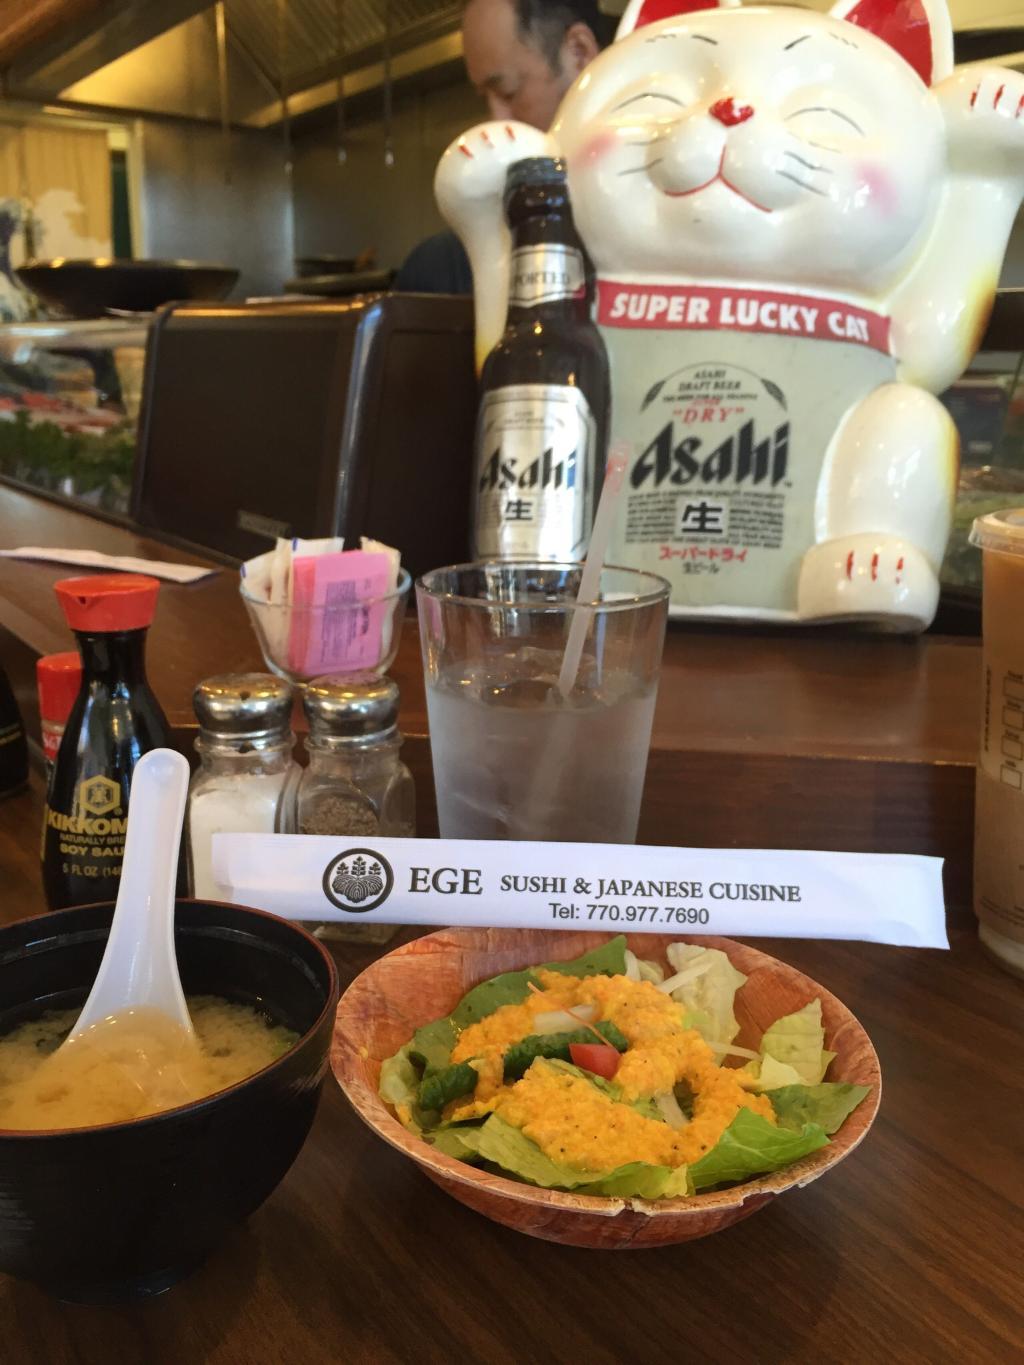 Ege Sushi & Japanese Cuisine